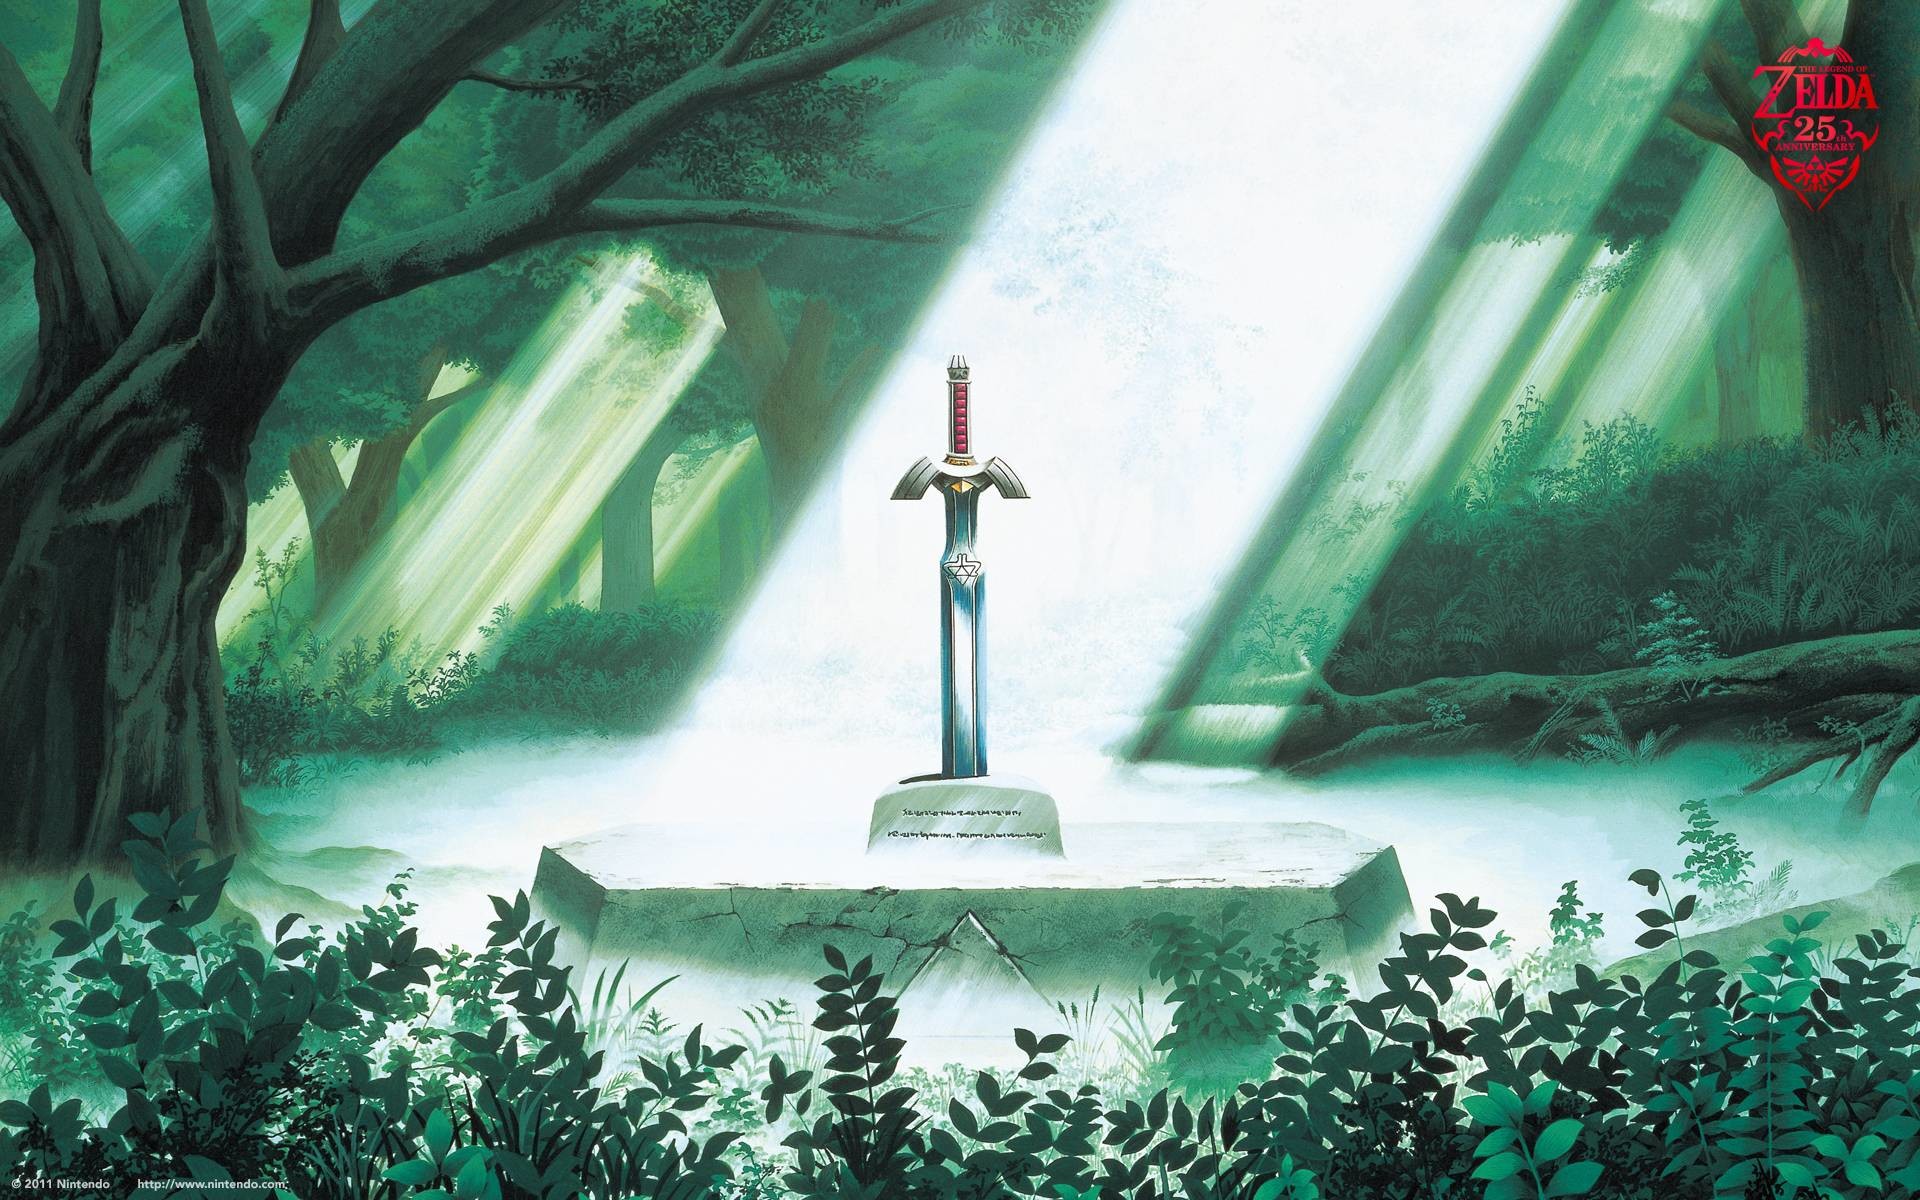 The Legend of Zelda wallpaper – Imagesih.